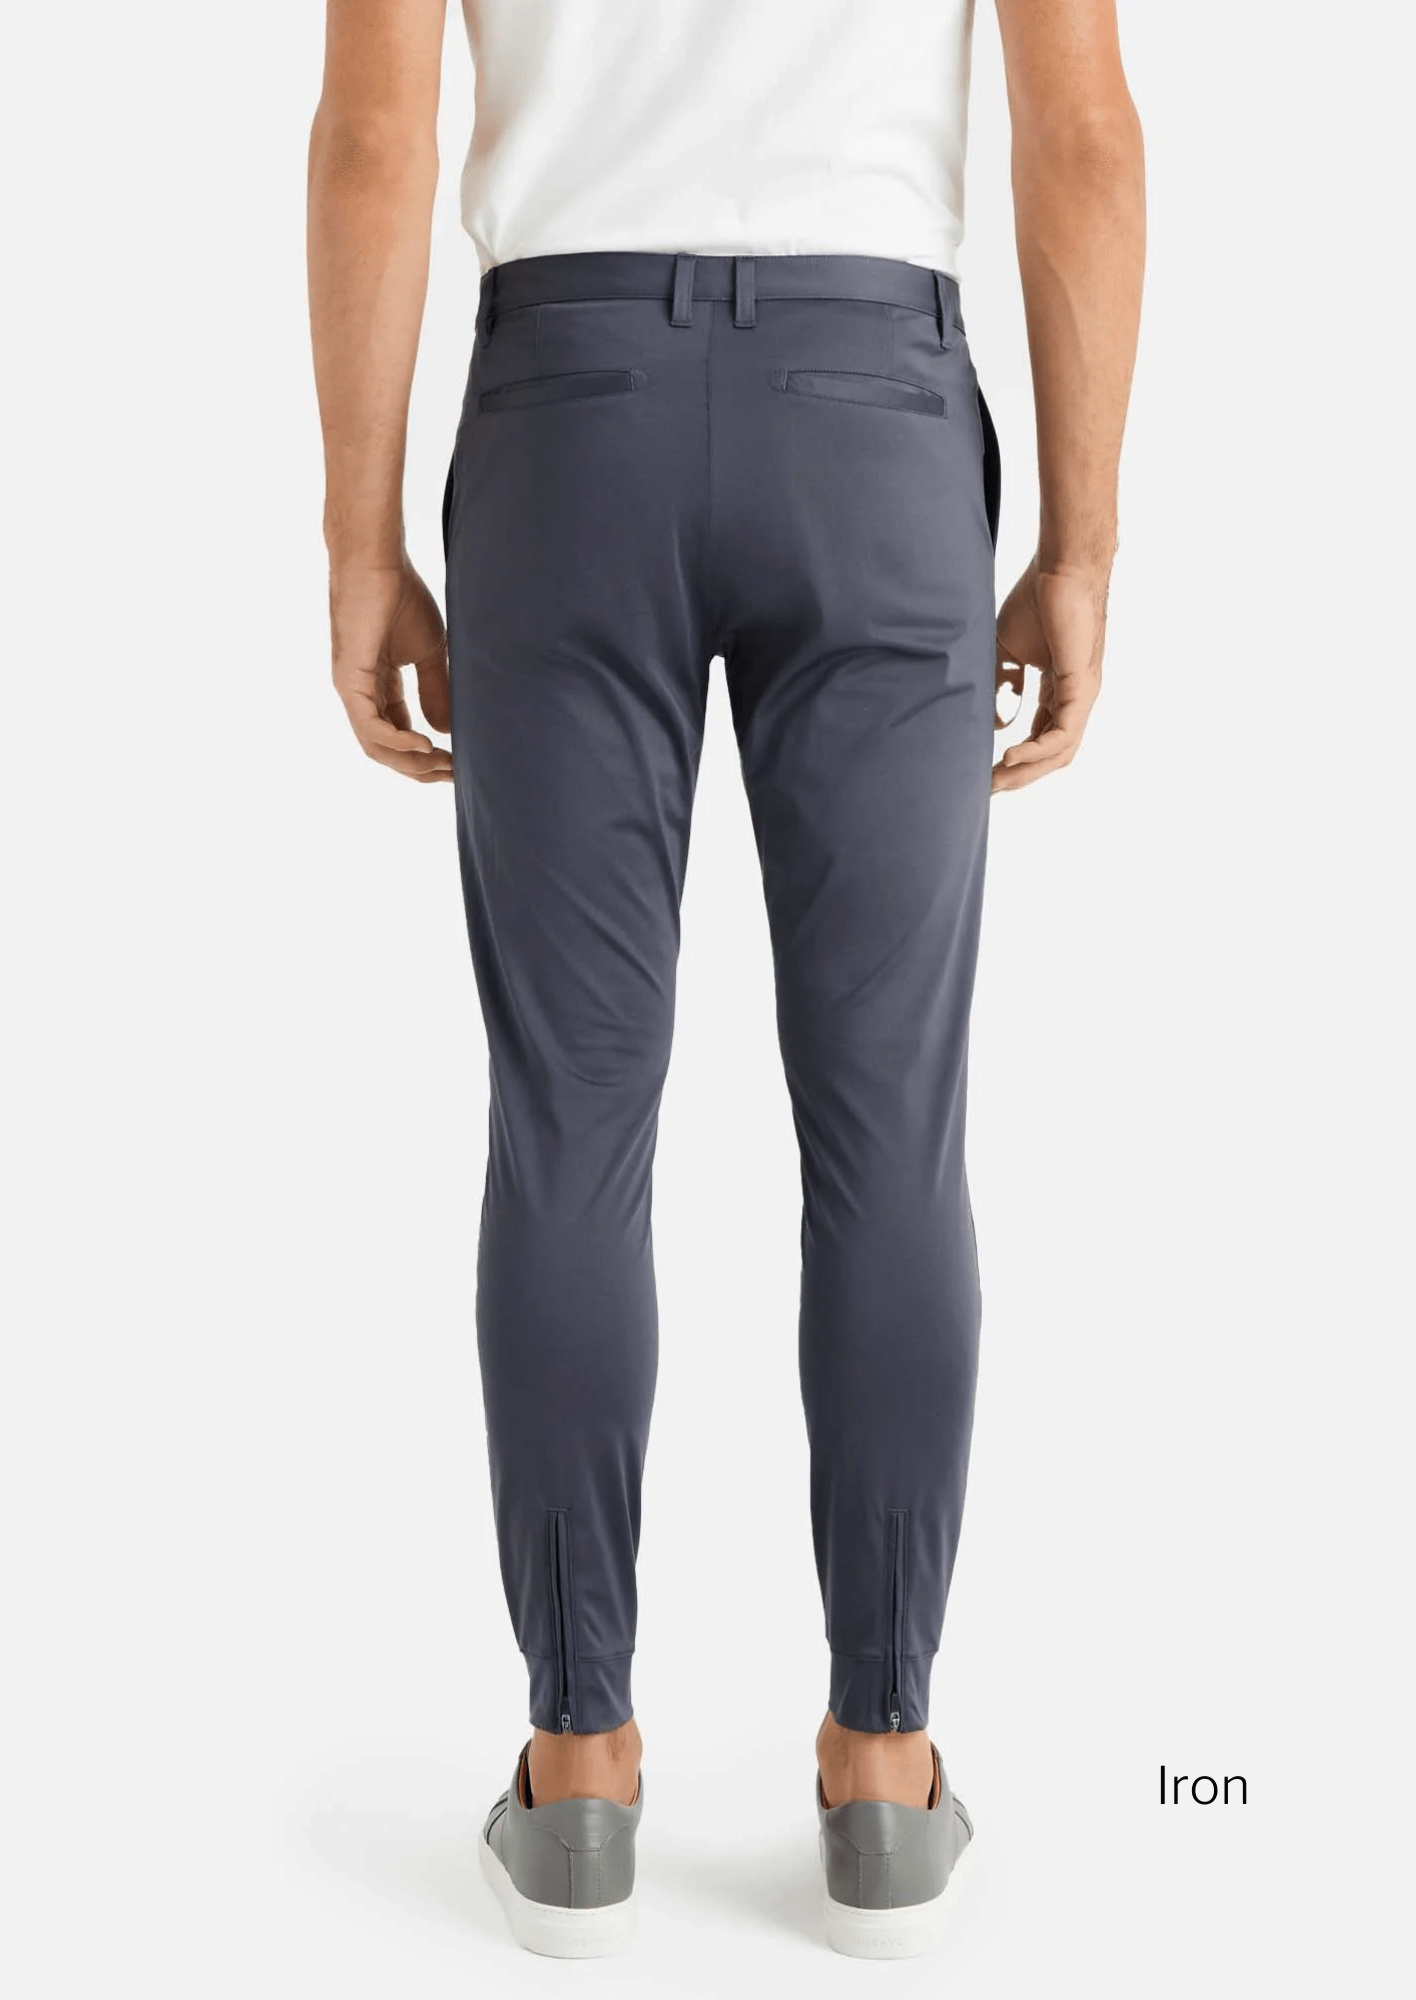 Rhone Men’s Performance Commuter Jogger Pants Size 28 Ankle Zip Pockets